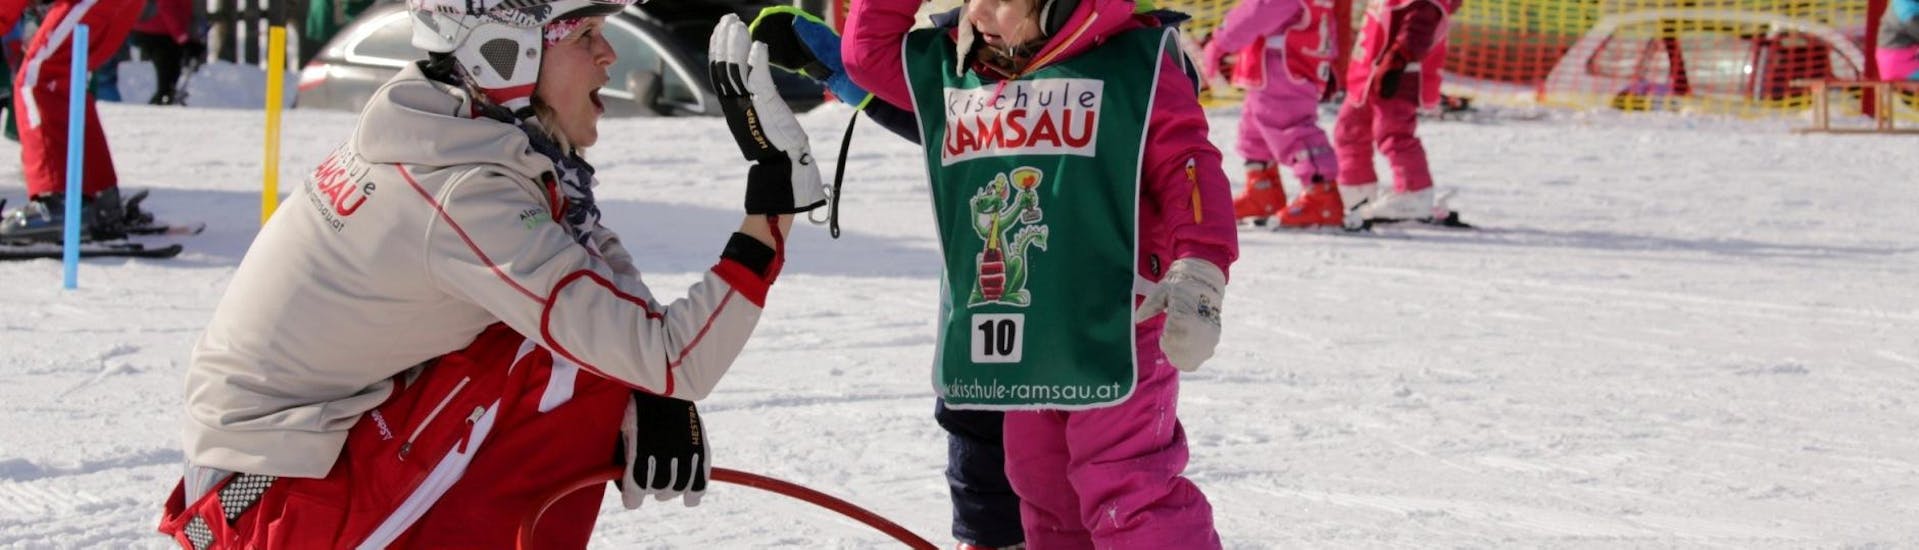 Lezioni di sci per bambini a partire da 3 anni per tutti i livelli con Skischule Ramsau.